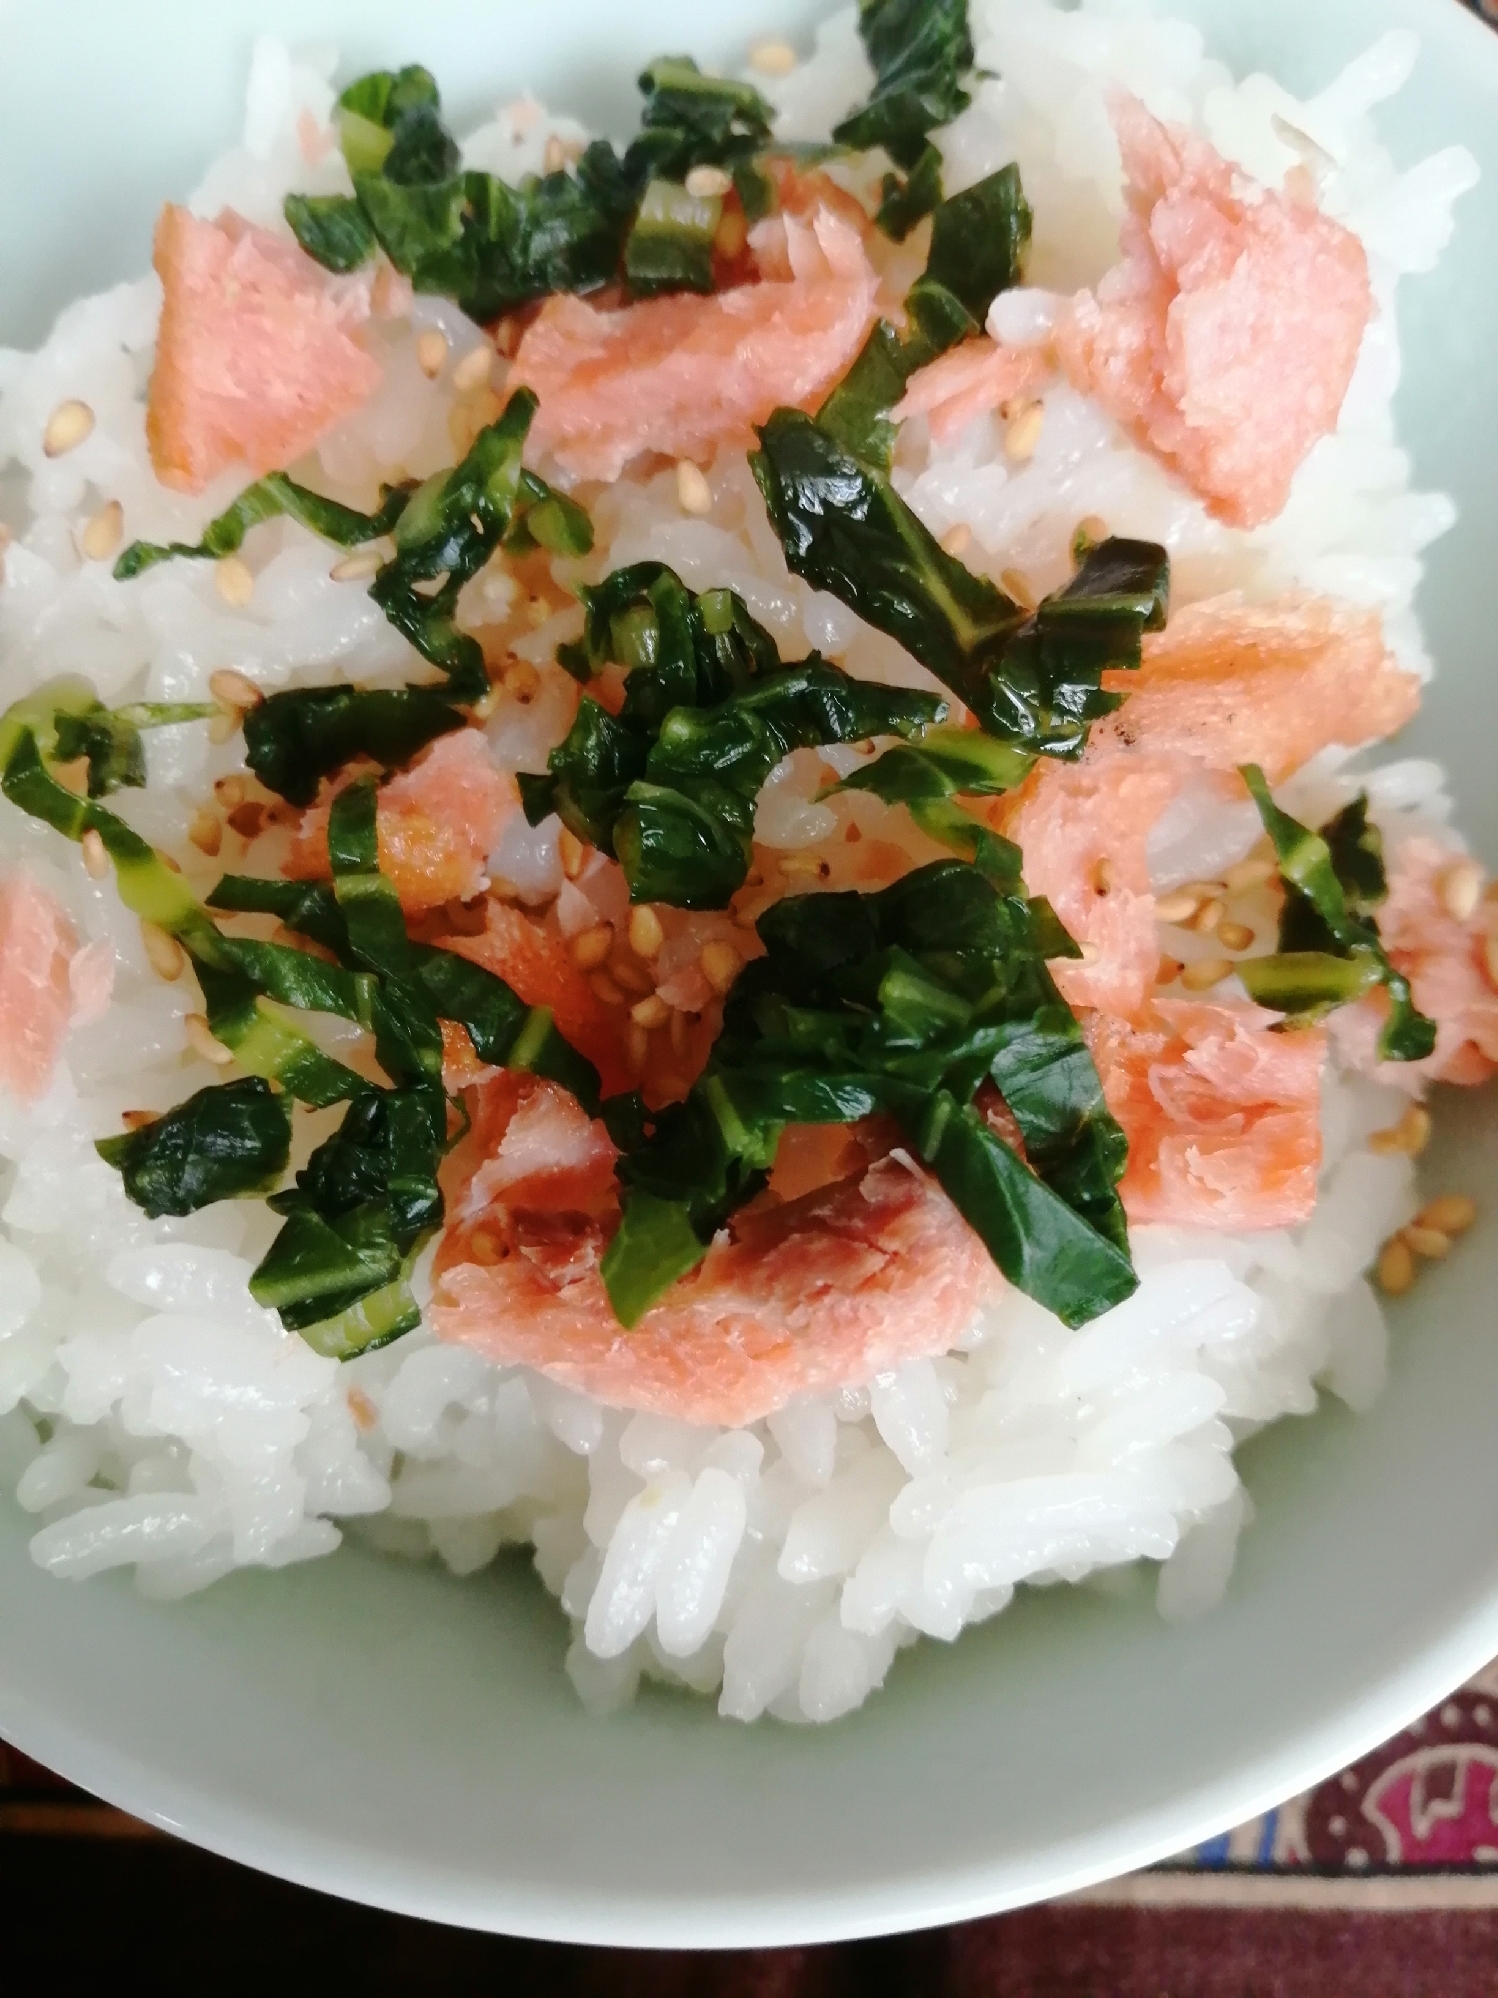 焼鮭と青菜の漬物（広島菜の漬物）とごまつゆかけご飯